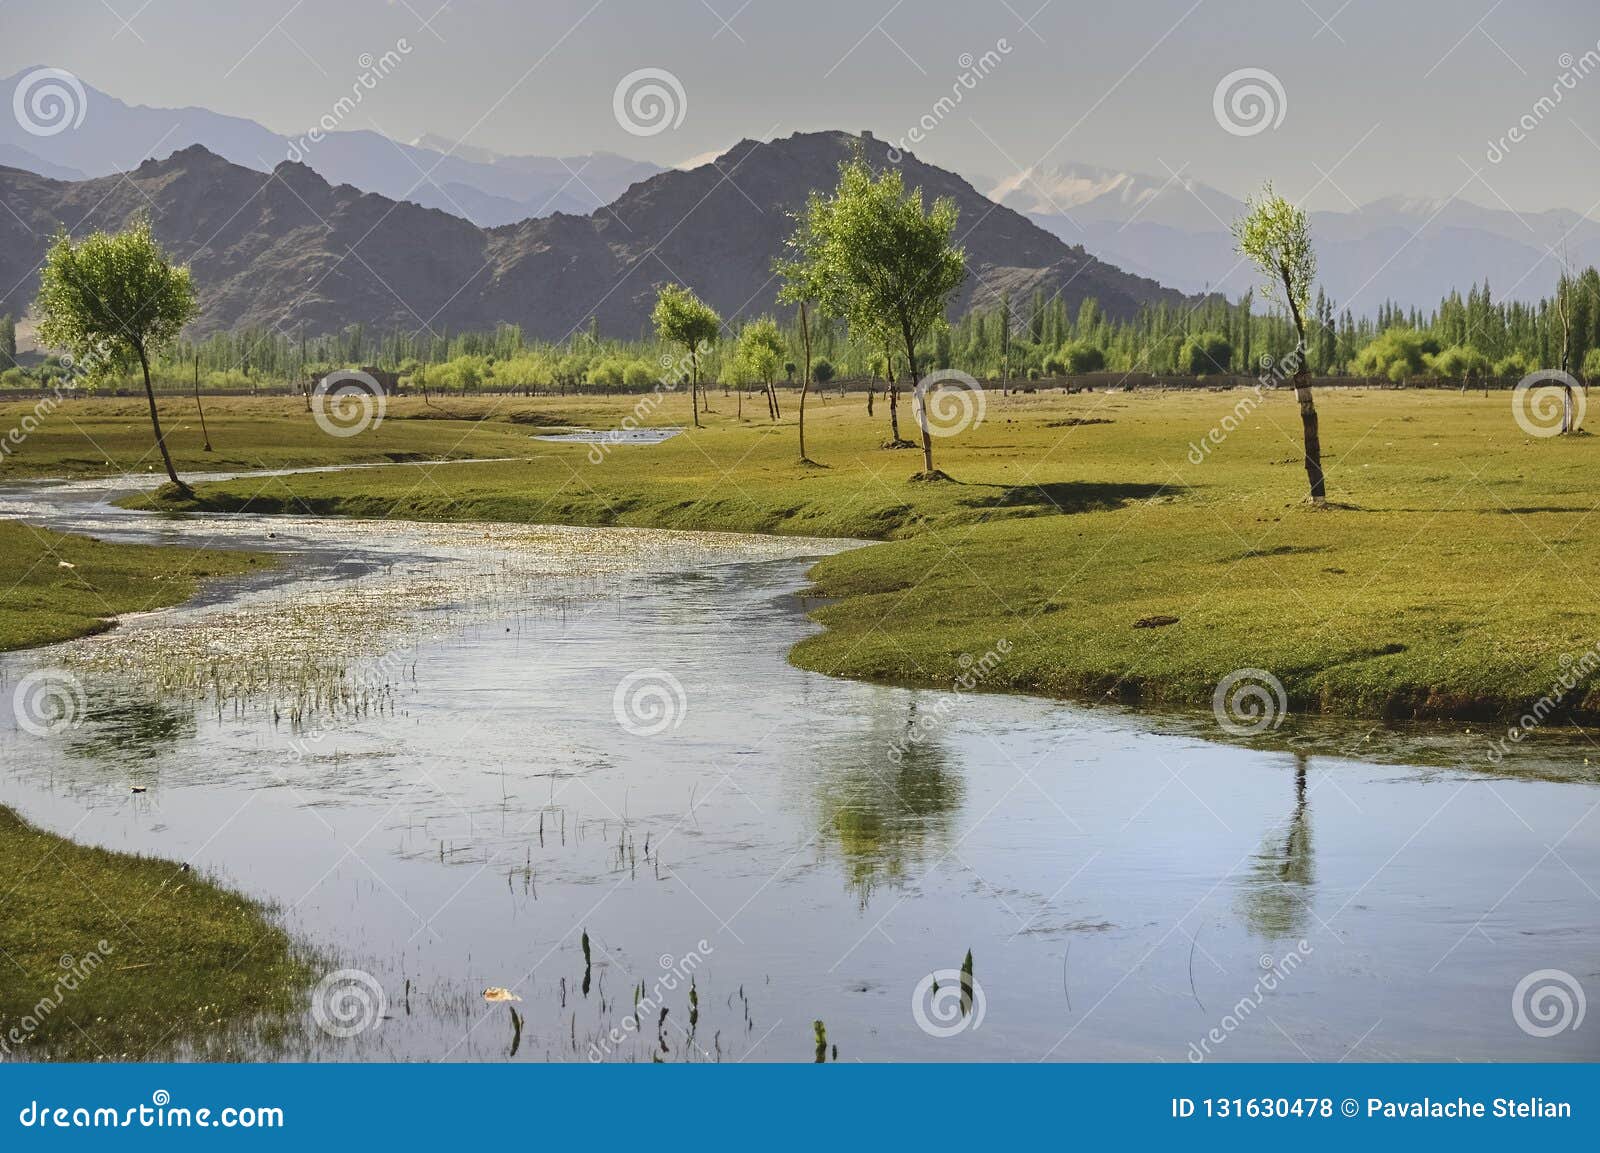 indus river flowing through plains in ladakh, india,